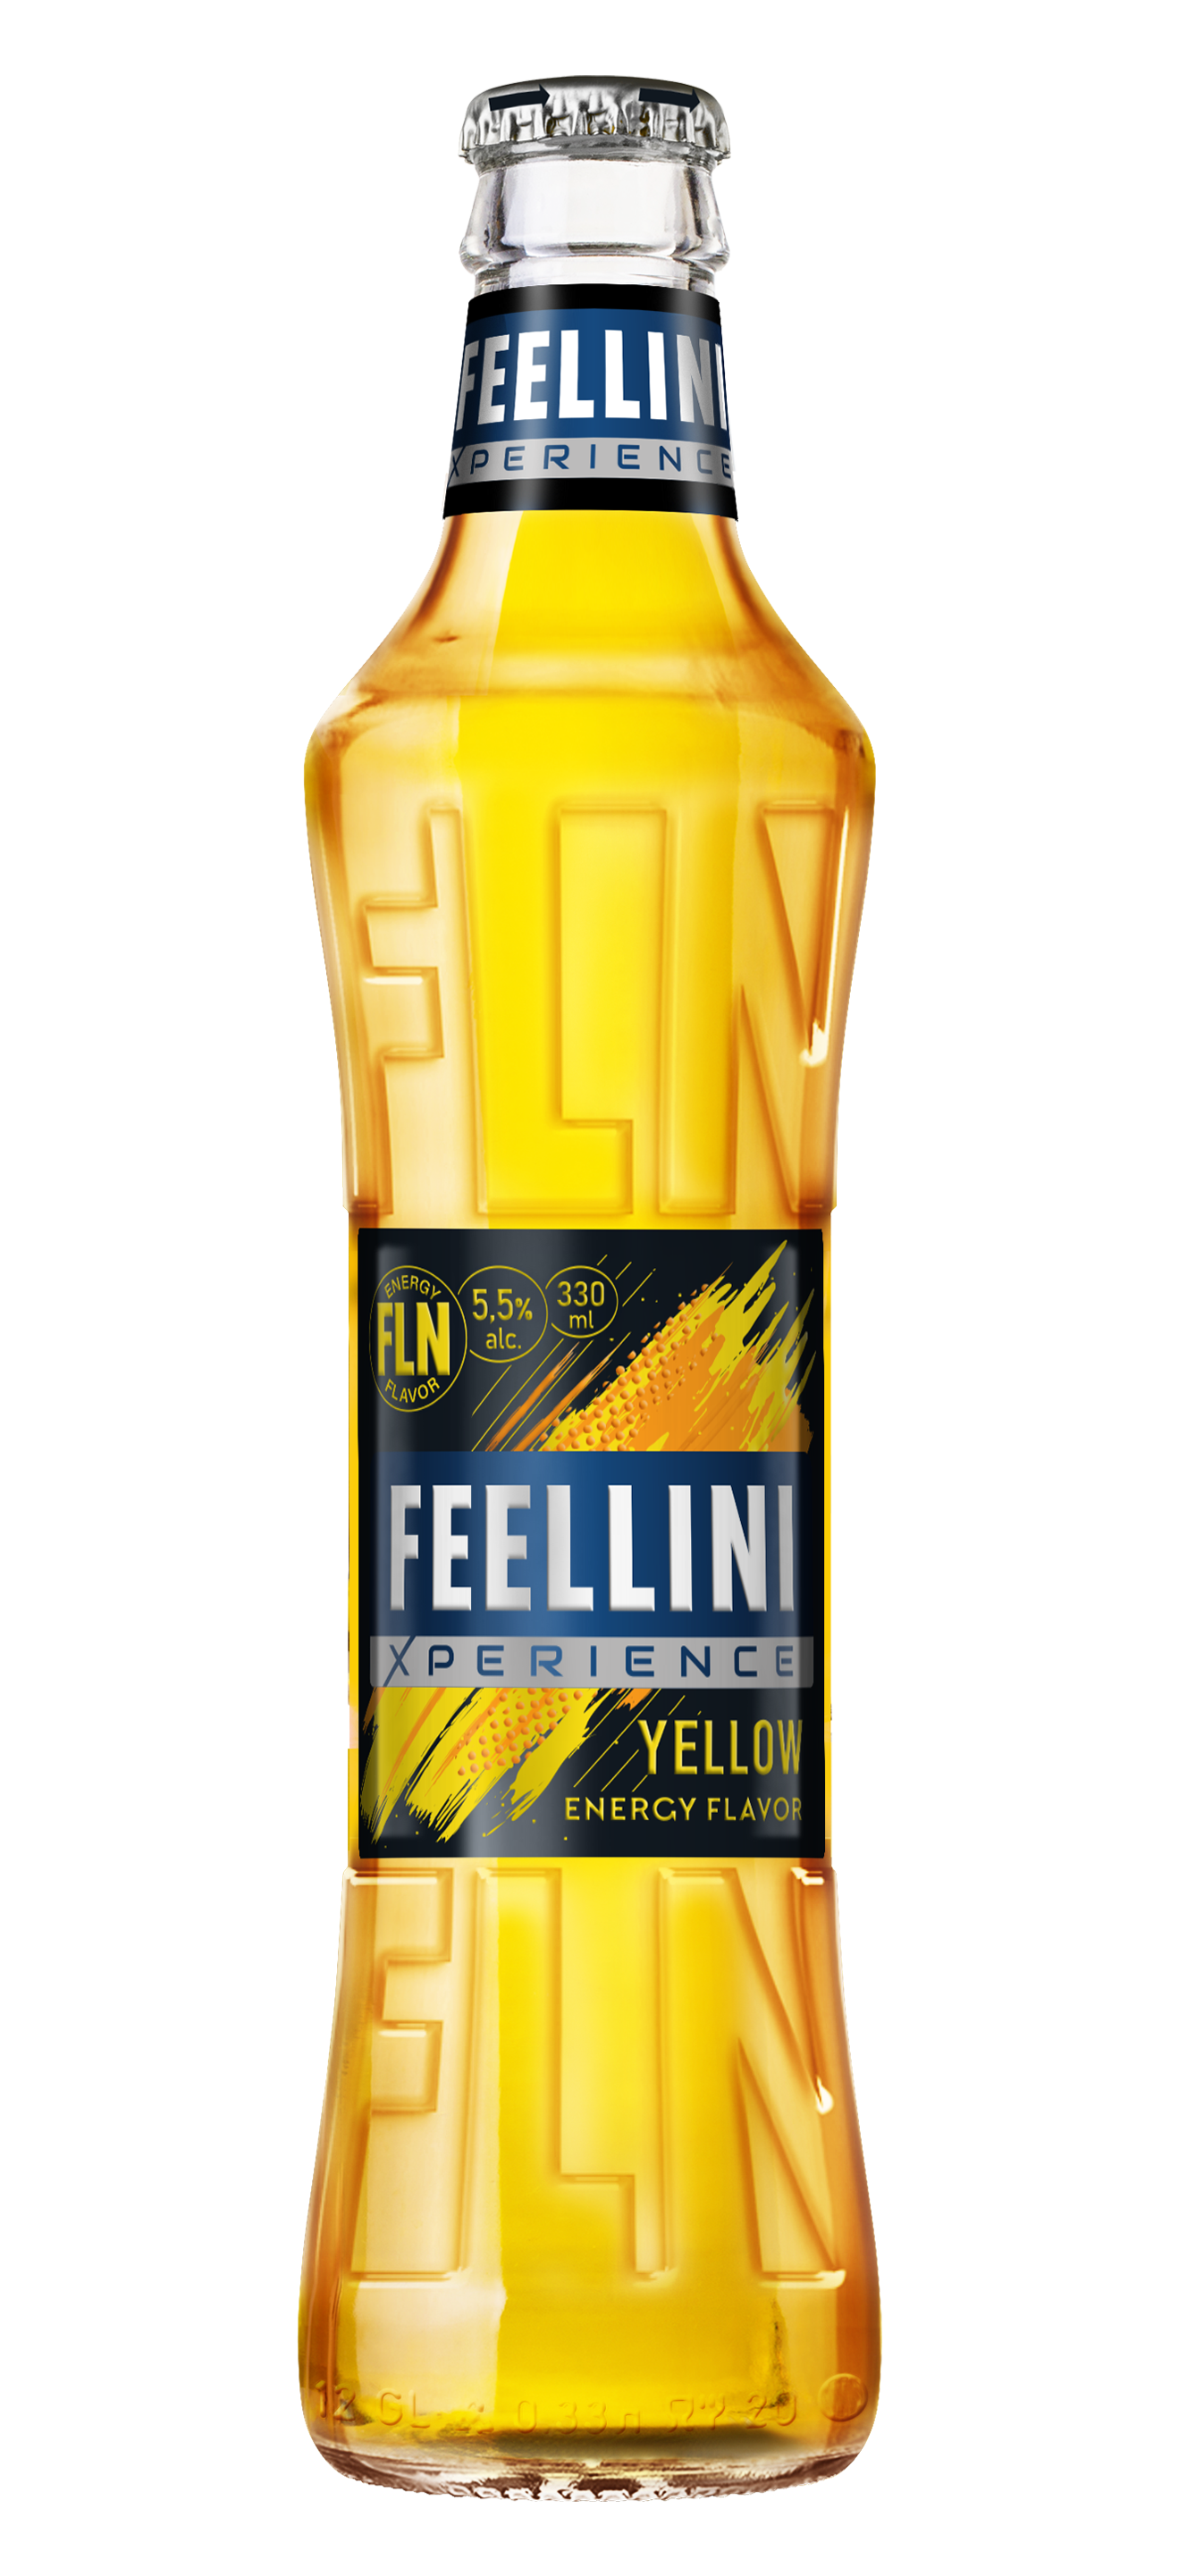 Feellini. FEELLINI Xperience Yellow вкус. Ликер FEELLINI. FEELLINI experience Yellow. FEELLINI Xperience Red.